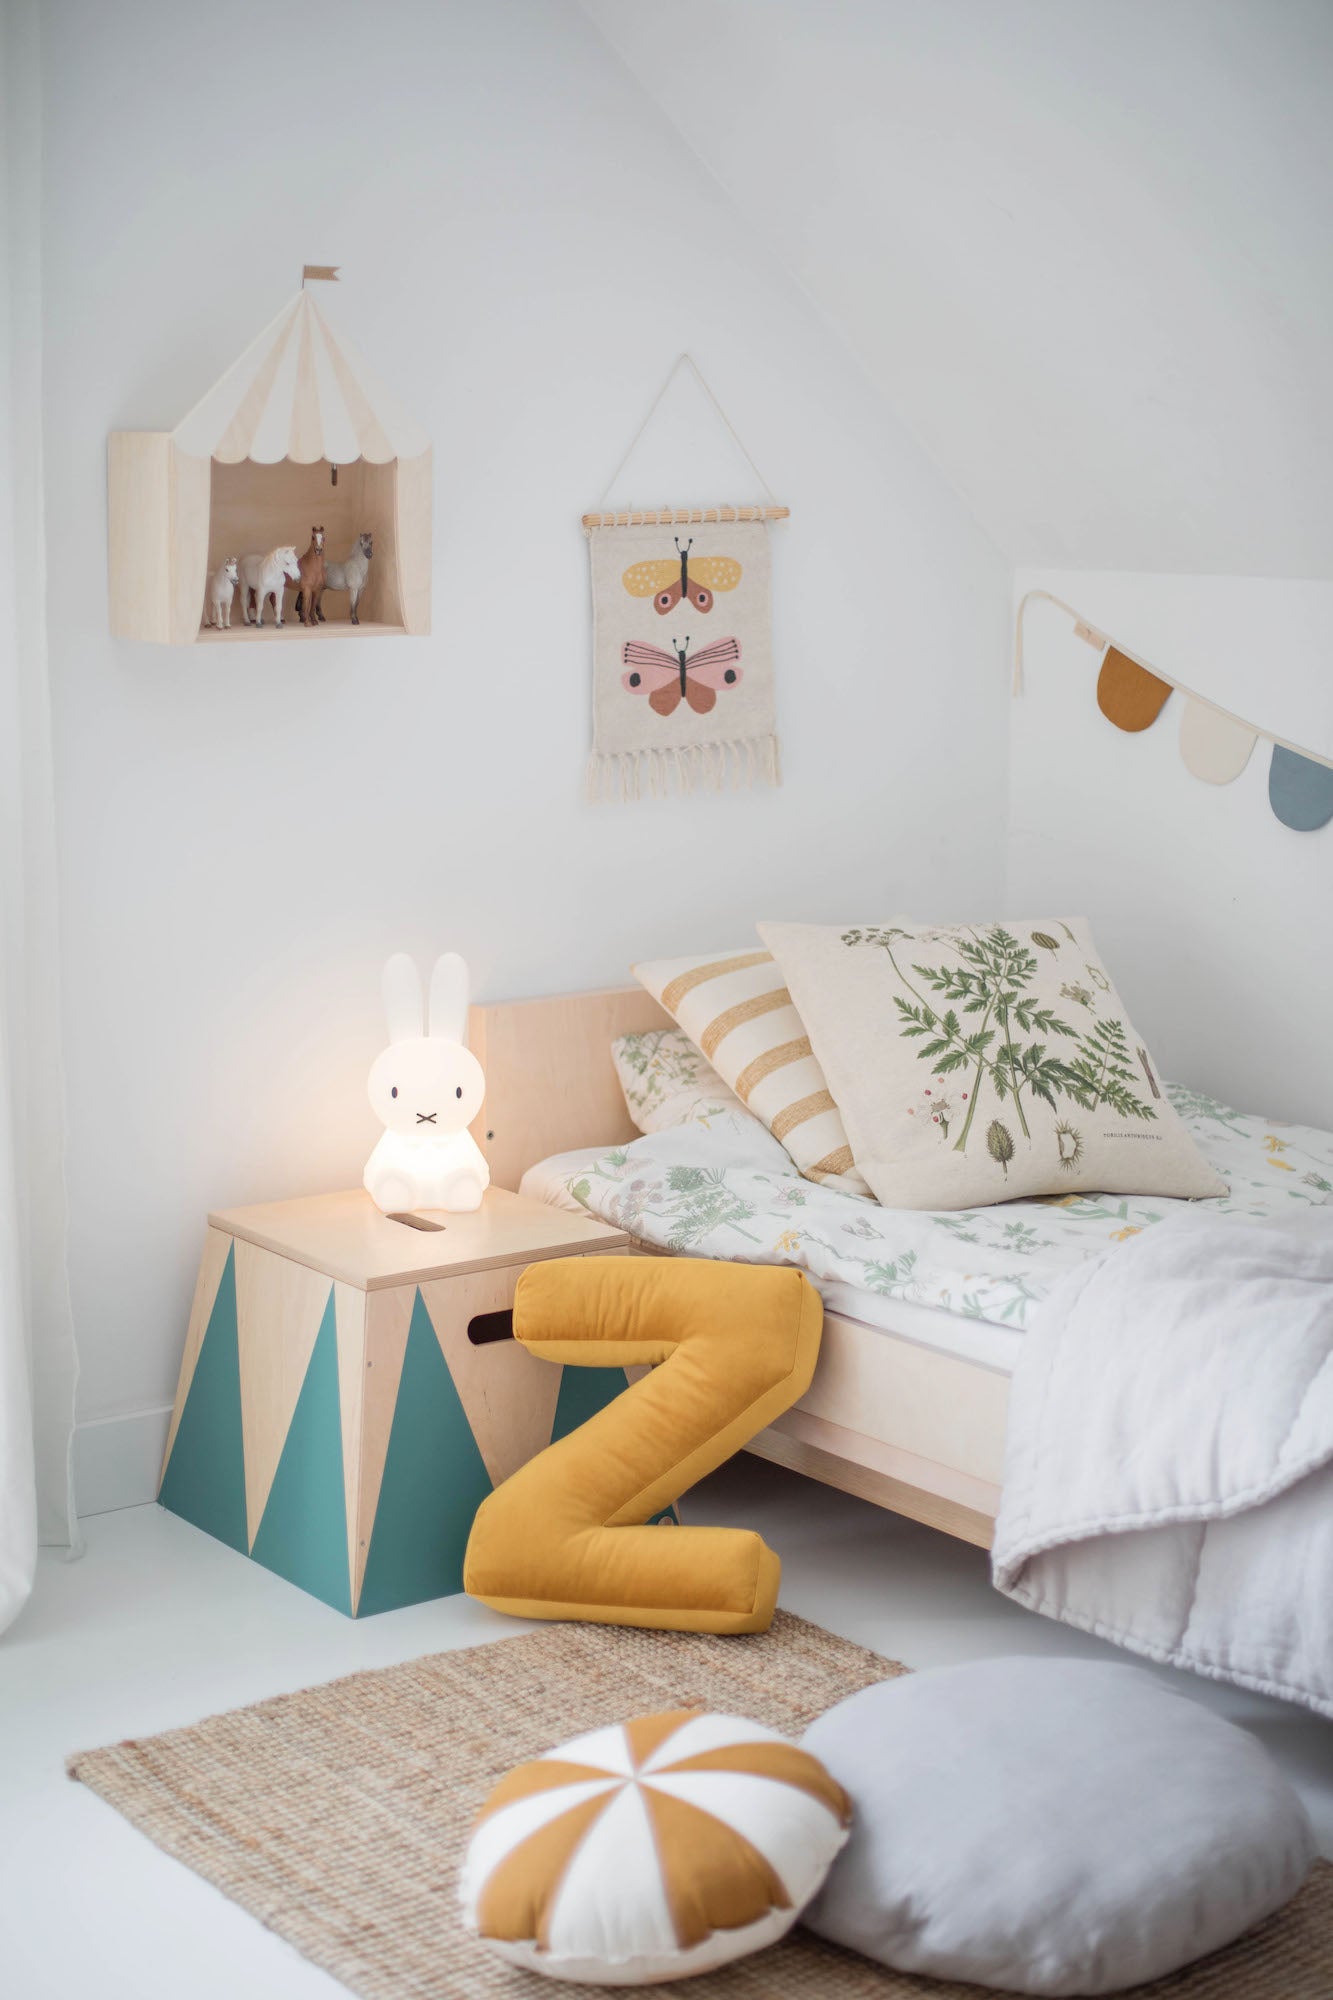 Poduszka literka welurowa Z w kolorze żółtym od Bettys Home oparta o łóżko w pokoju chłopca